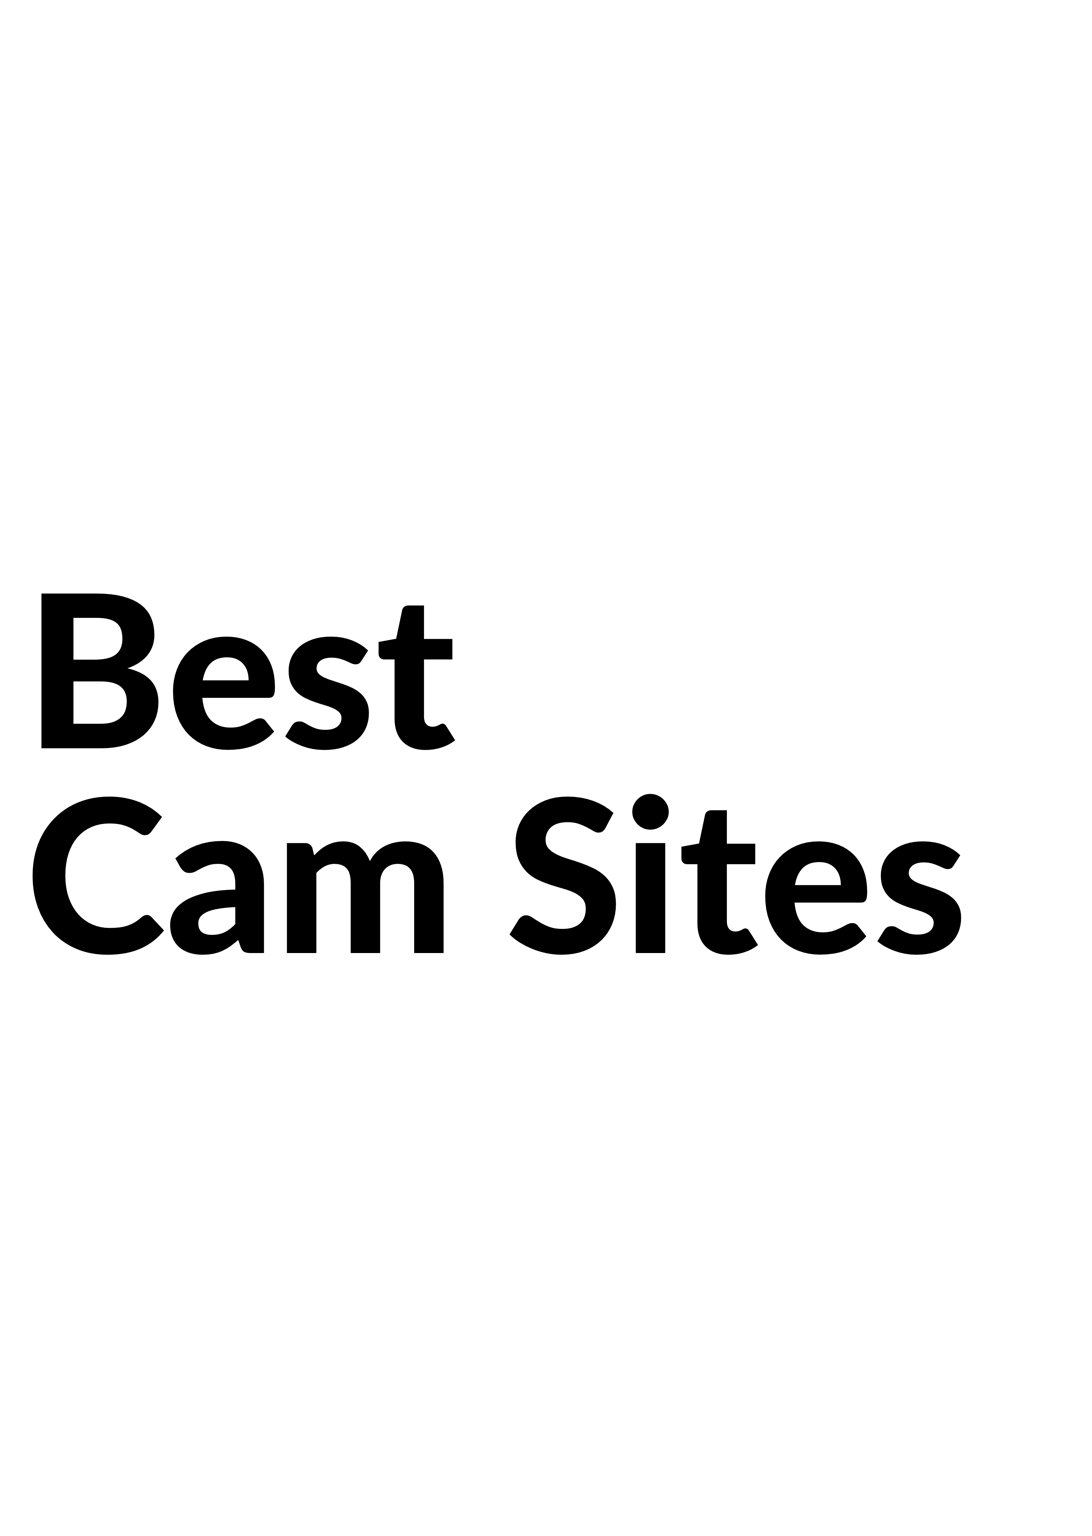 Camsodacom Our Review Of The Popular Live Cam Site 